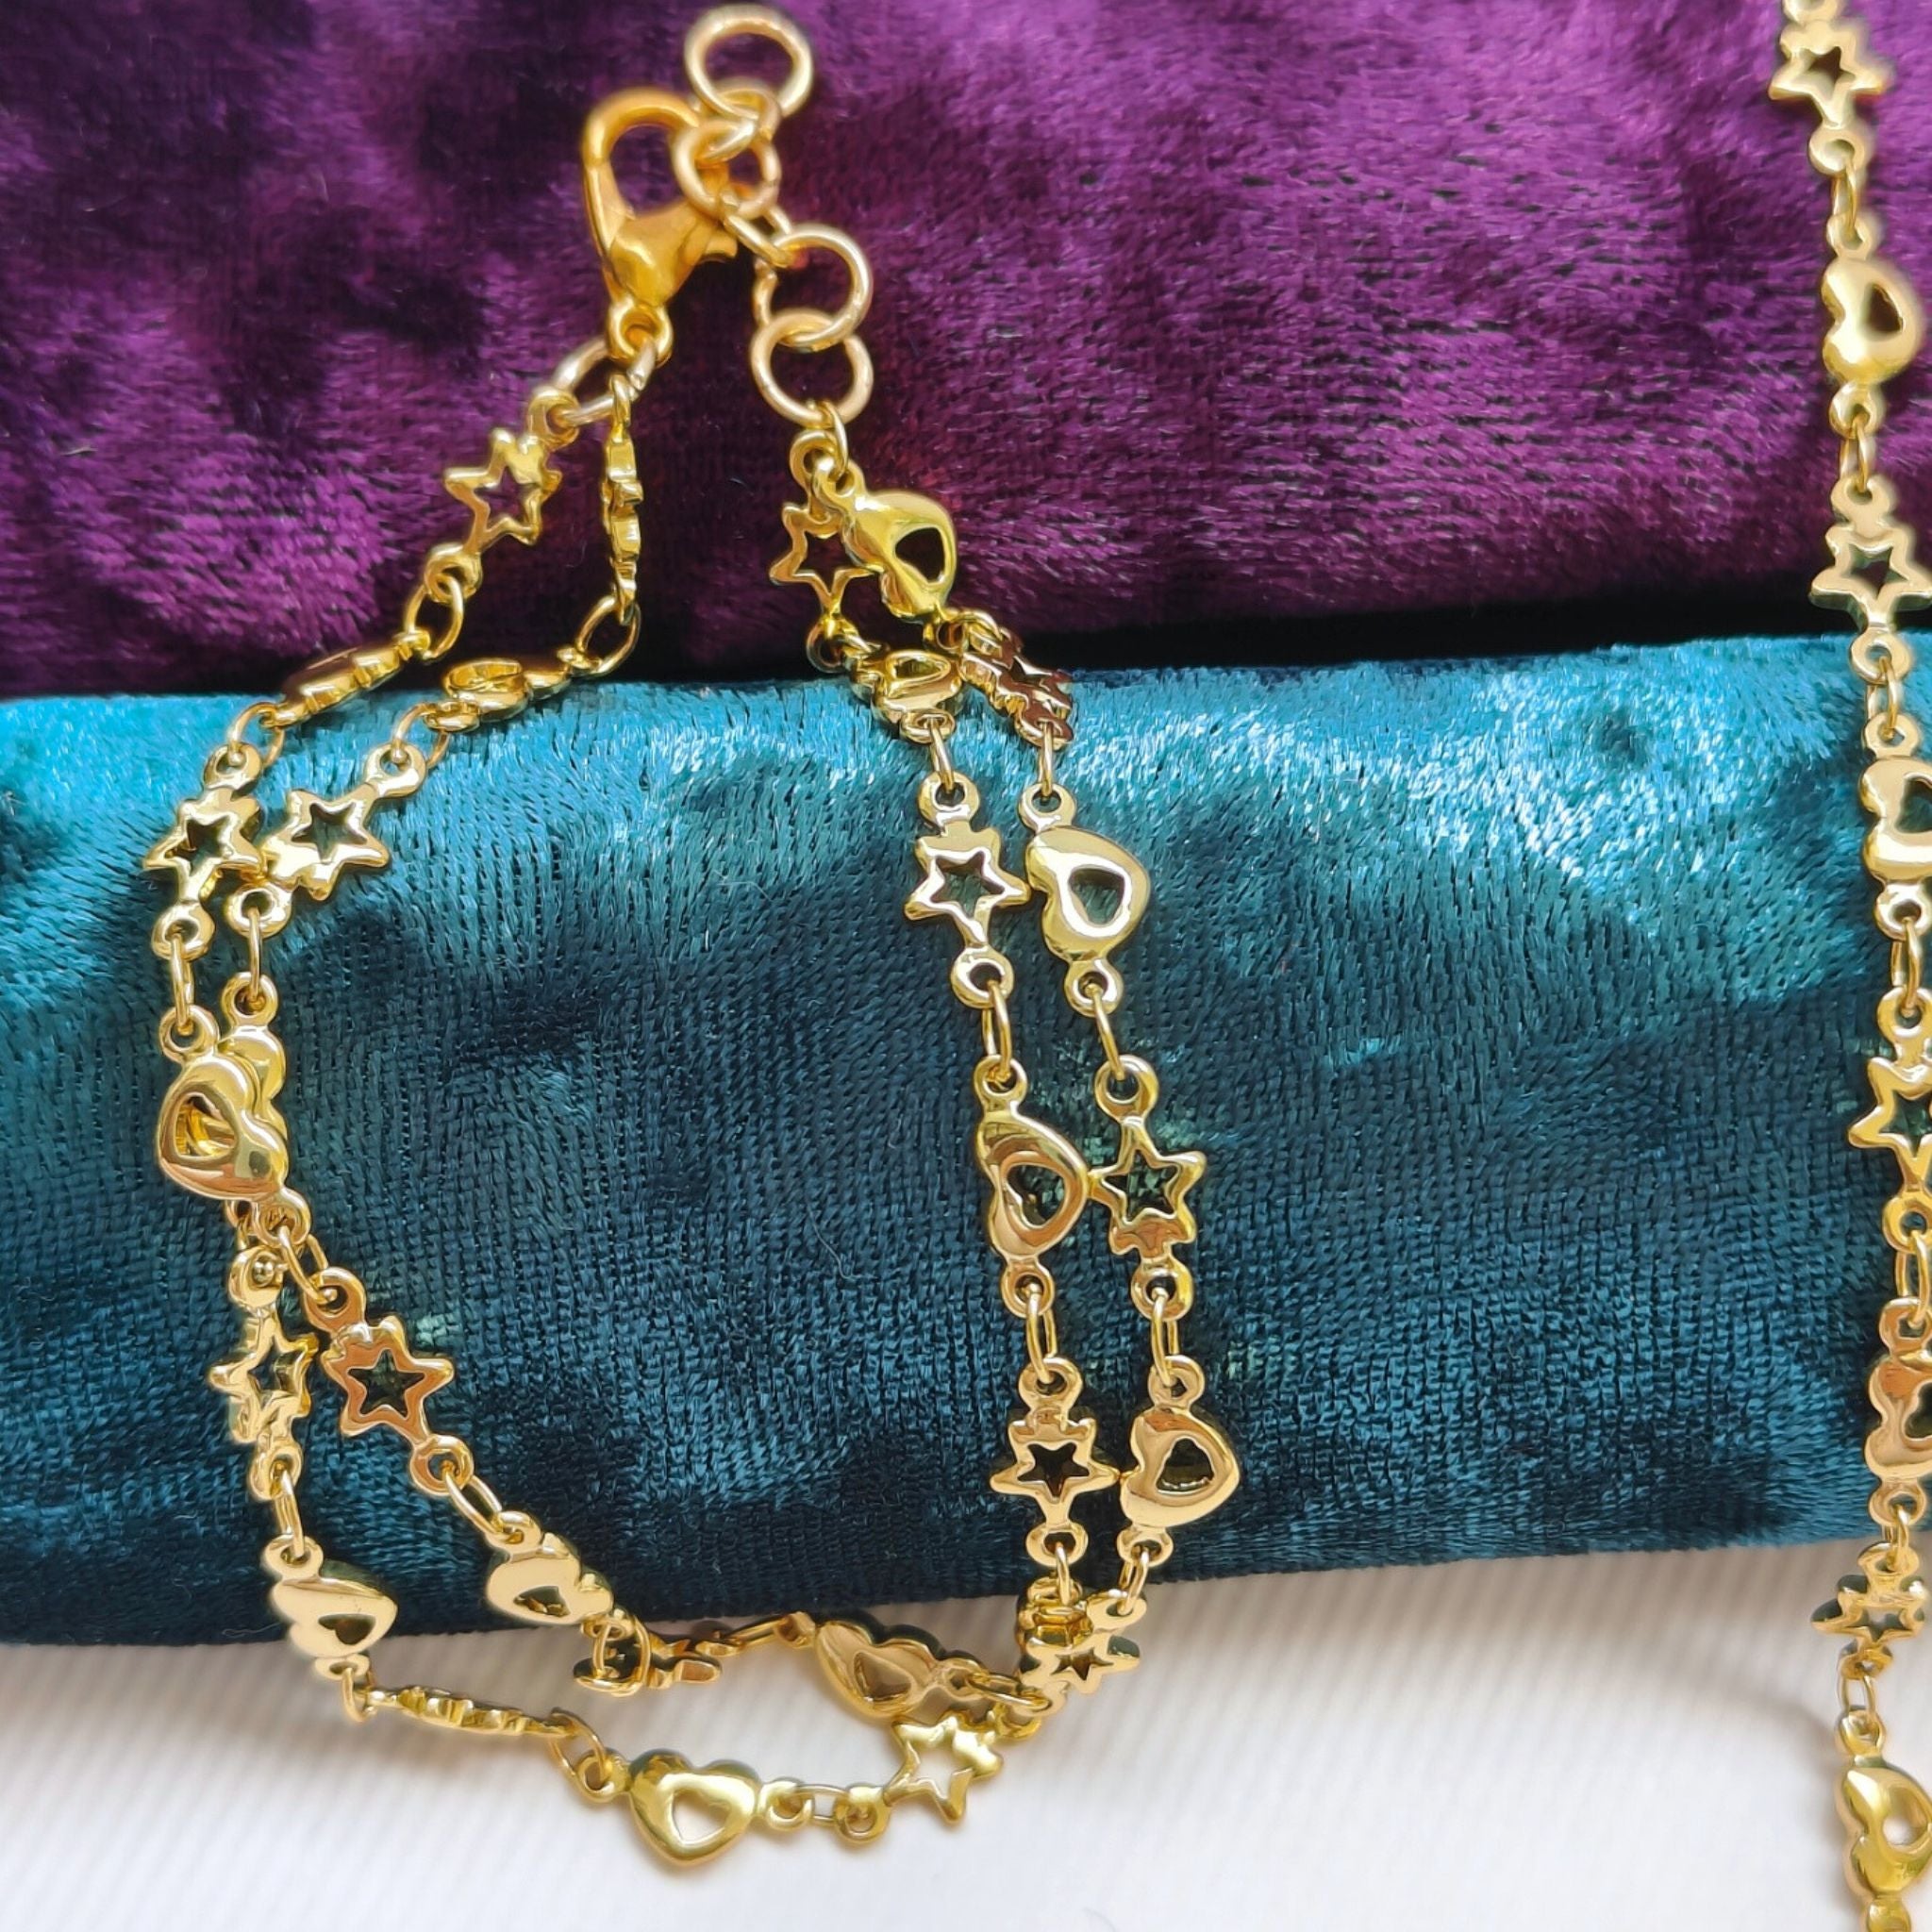 Hearts & Stars Gold Plated Necklace Bracelet Set